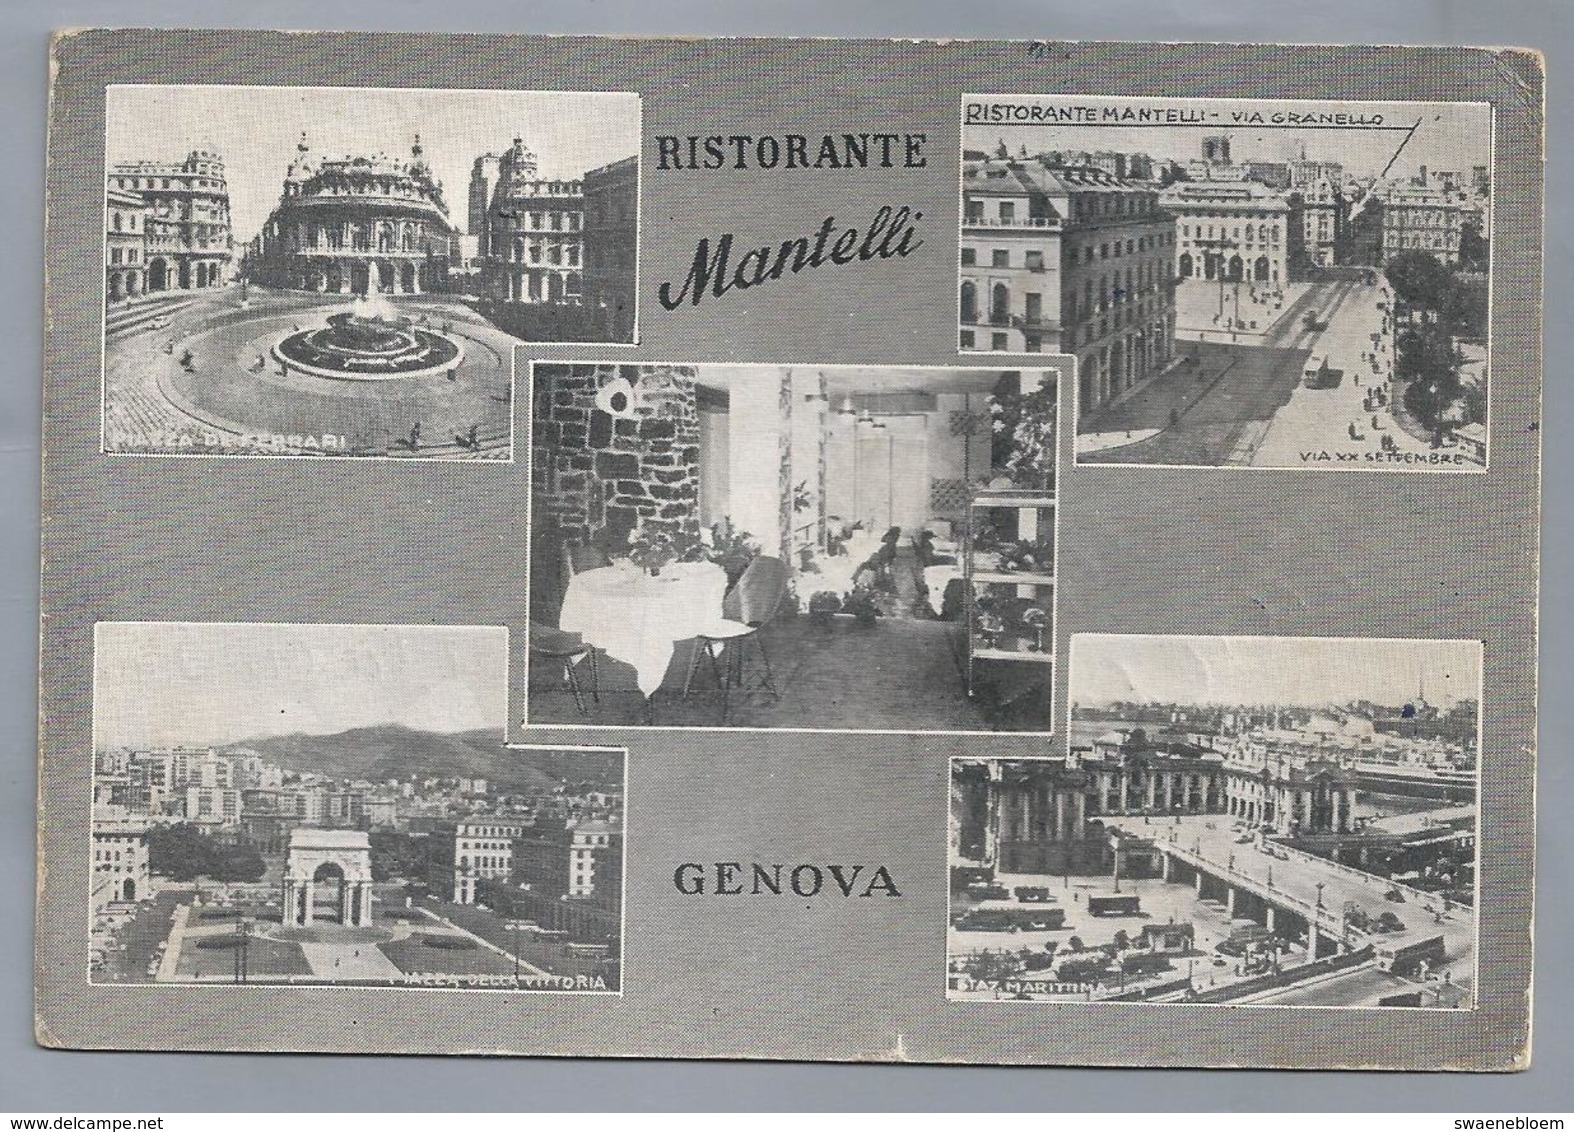 IT.- GENOVA. GENUA. GENOA. RISTORANTE MANTELLI VIA GRANELLO. 1958 - Genova (Genoa)